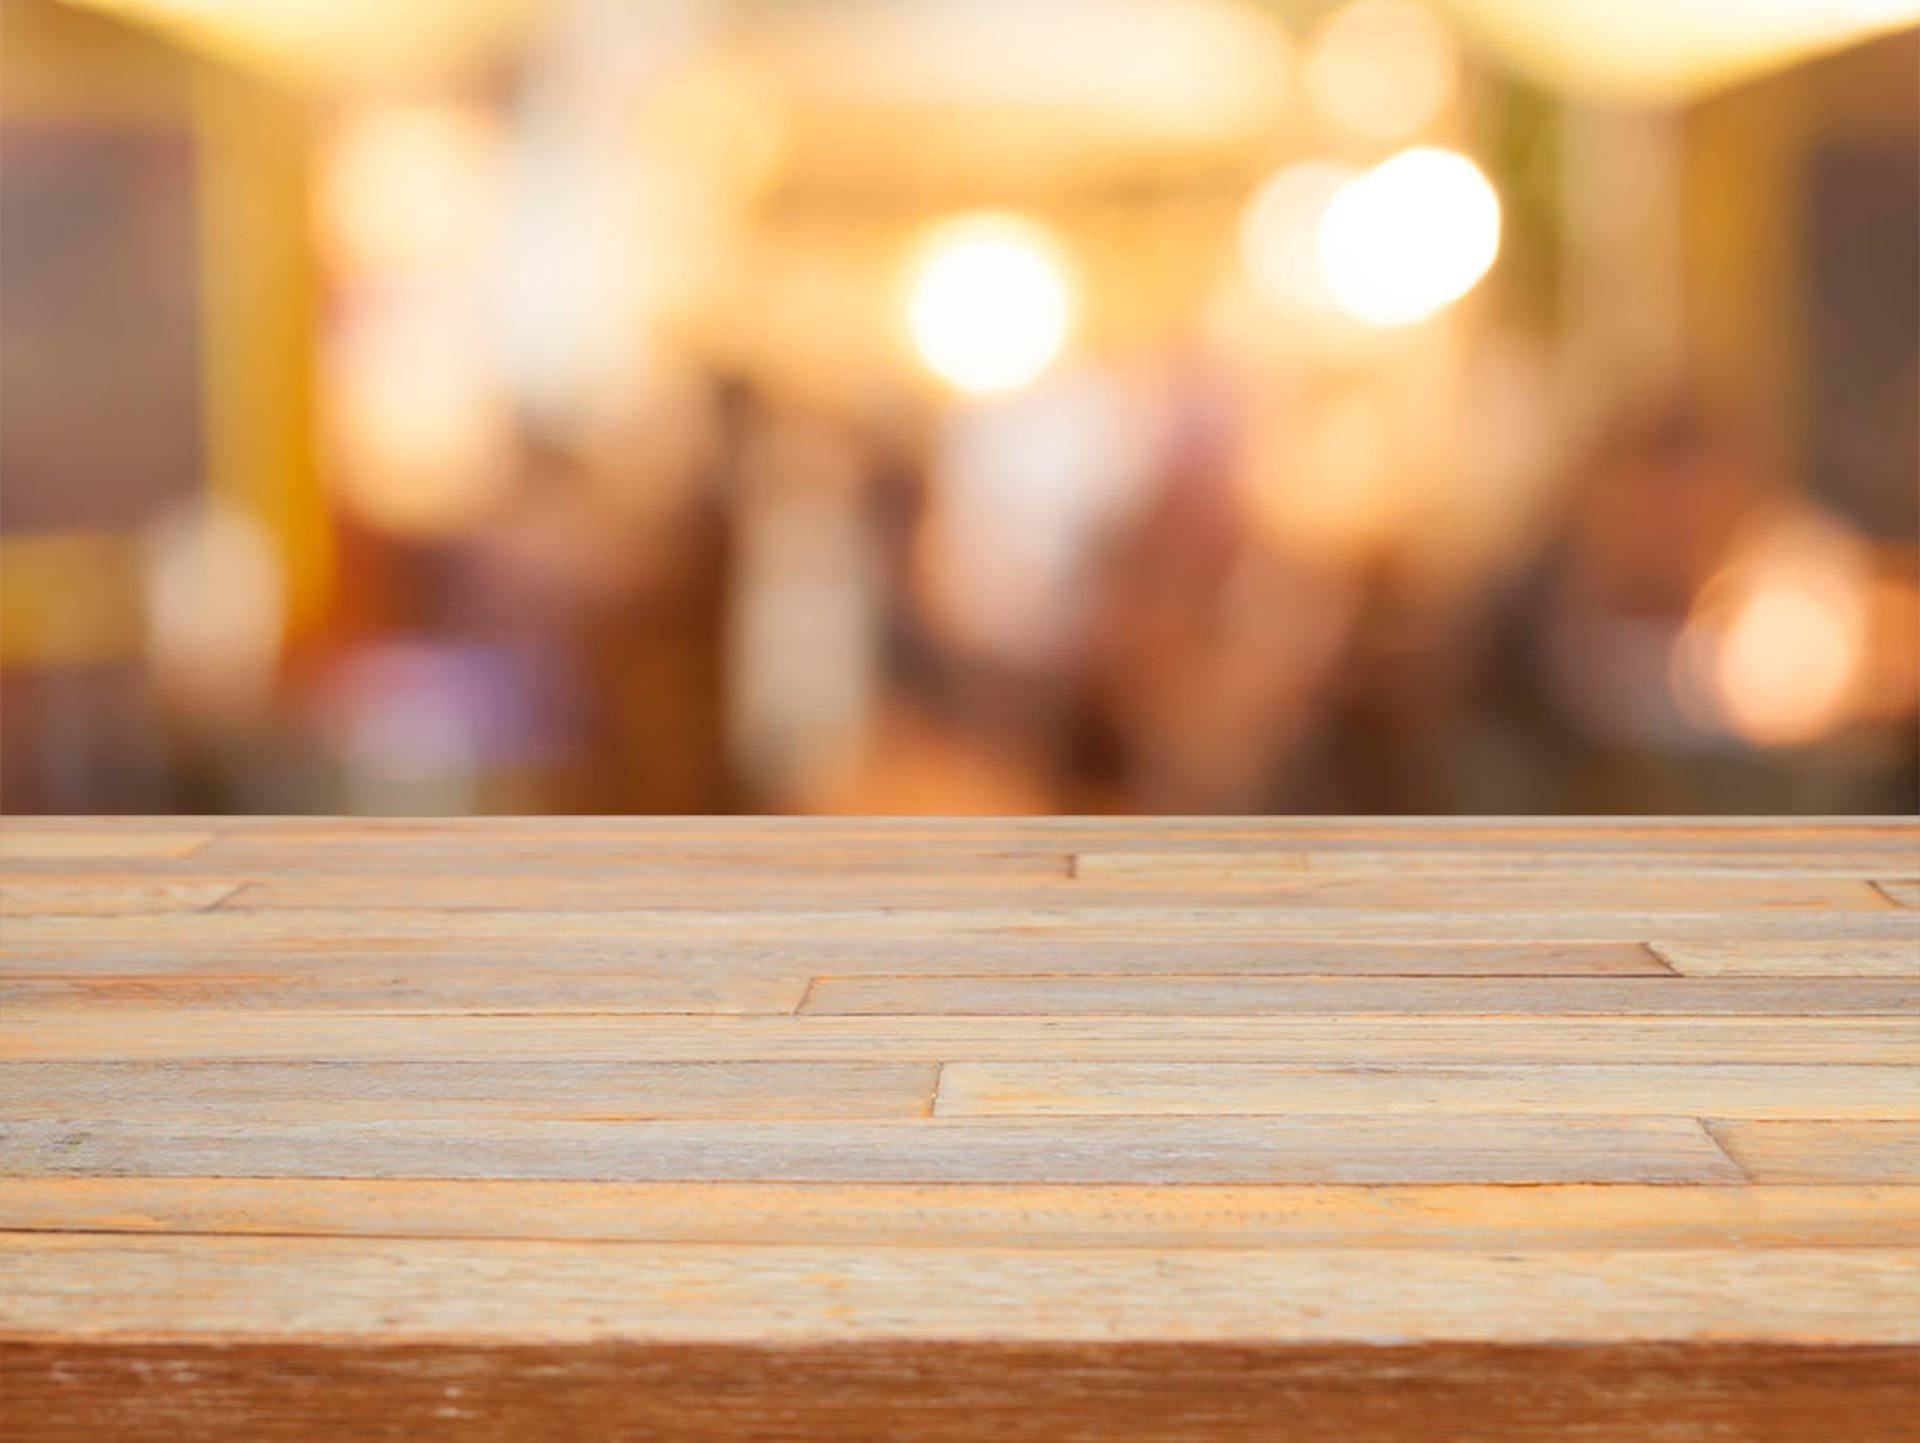 Деревянная поверхность стола. Поверхность стола в кафе. Пустой деревянный стол. Деревянная столешница фон.